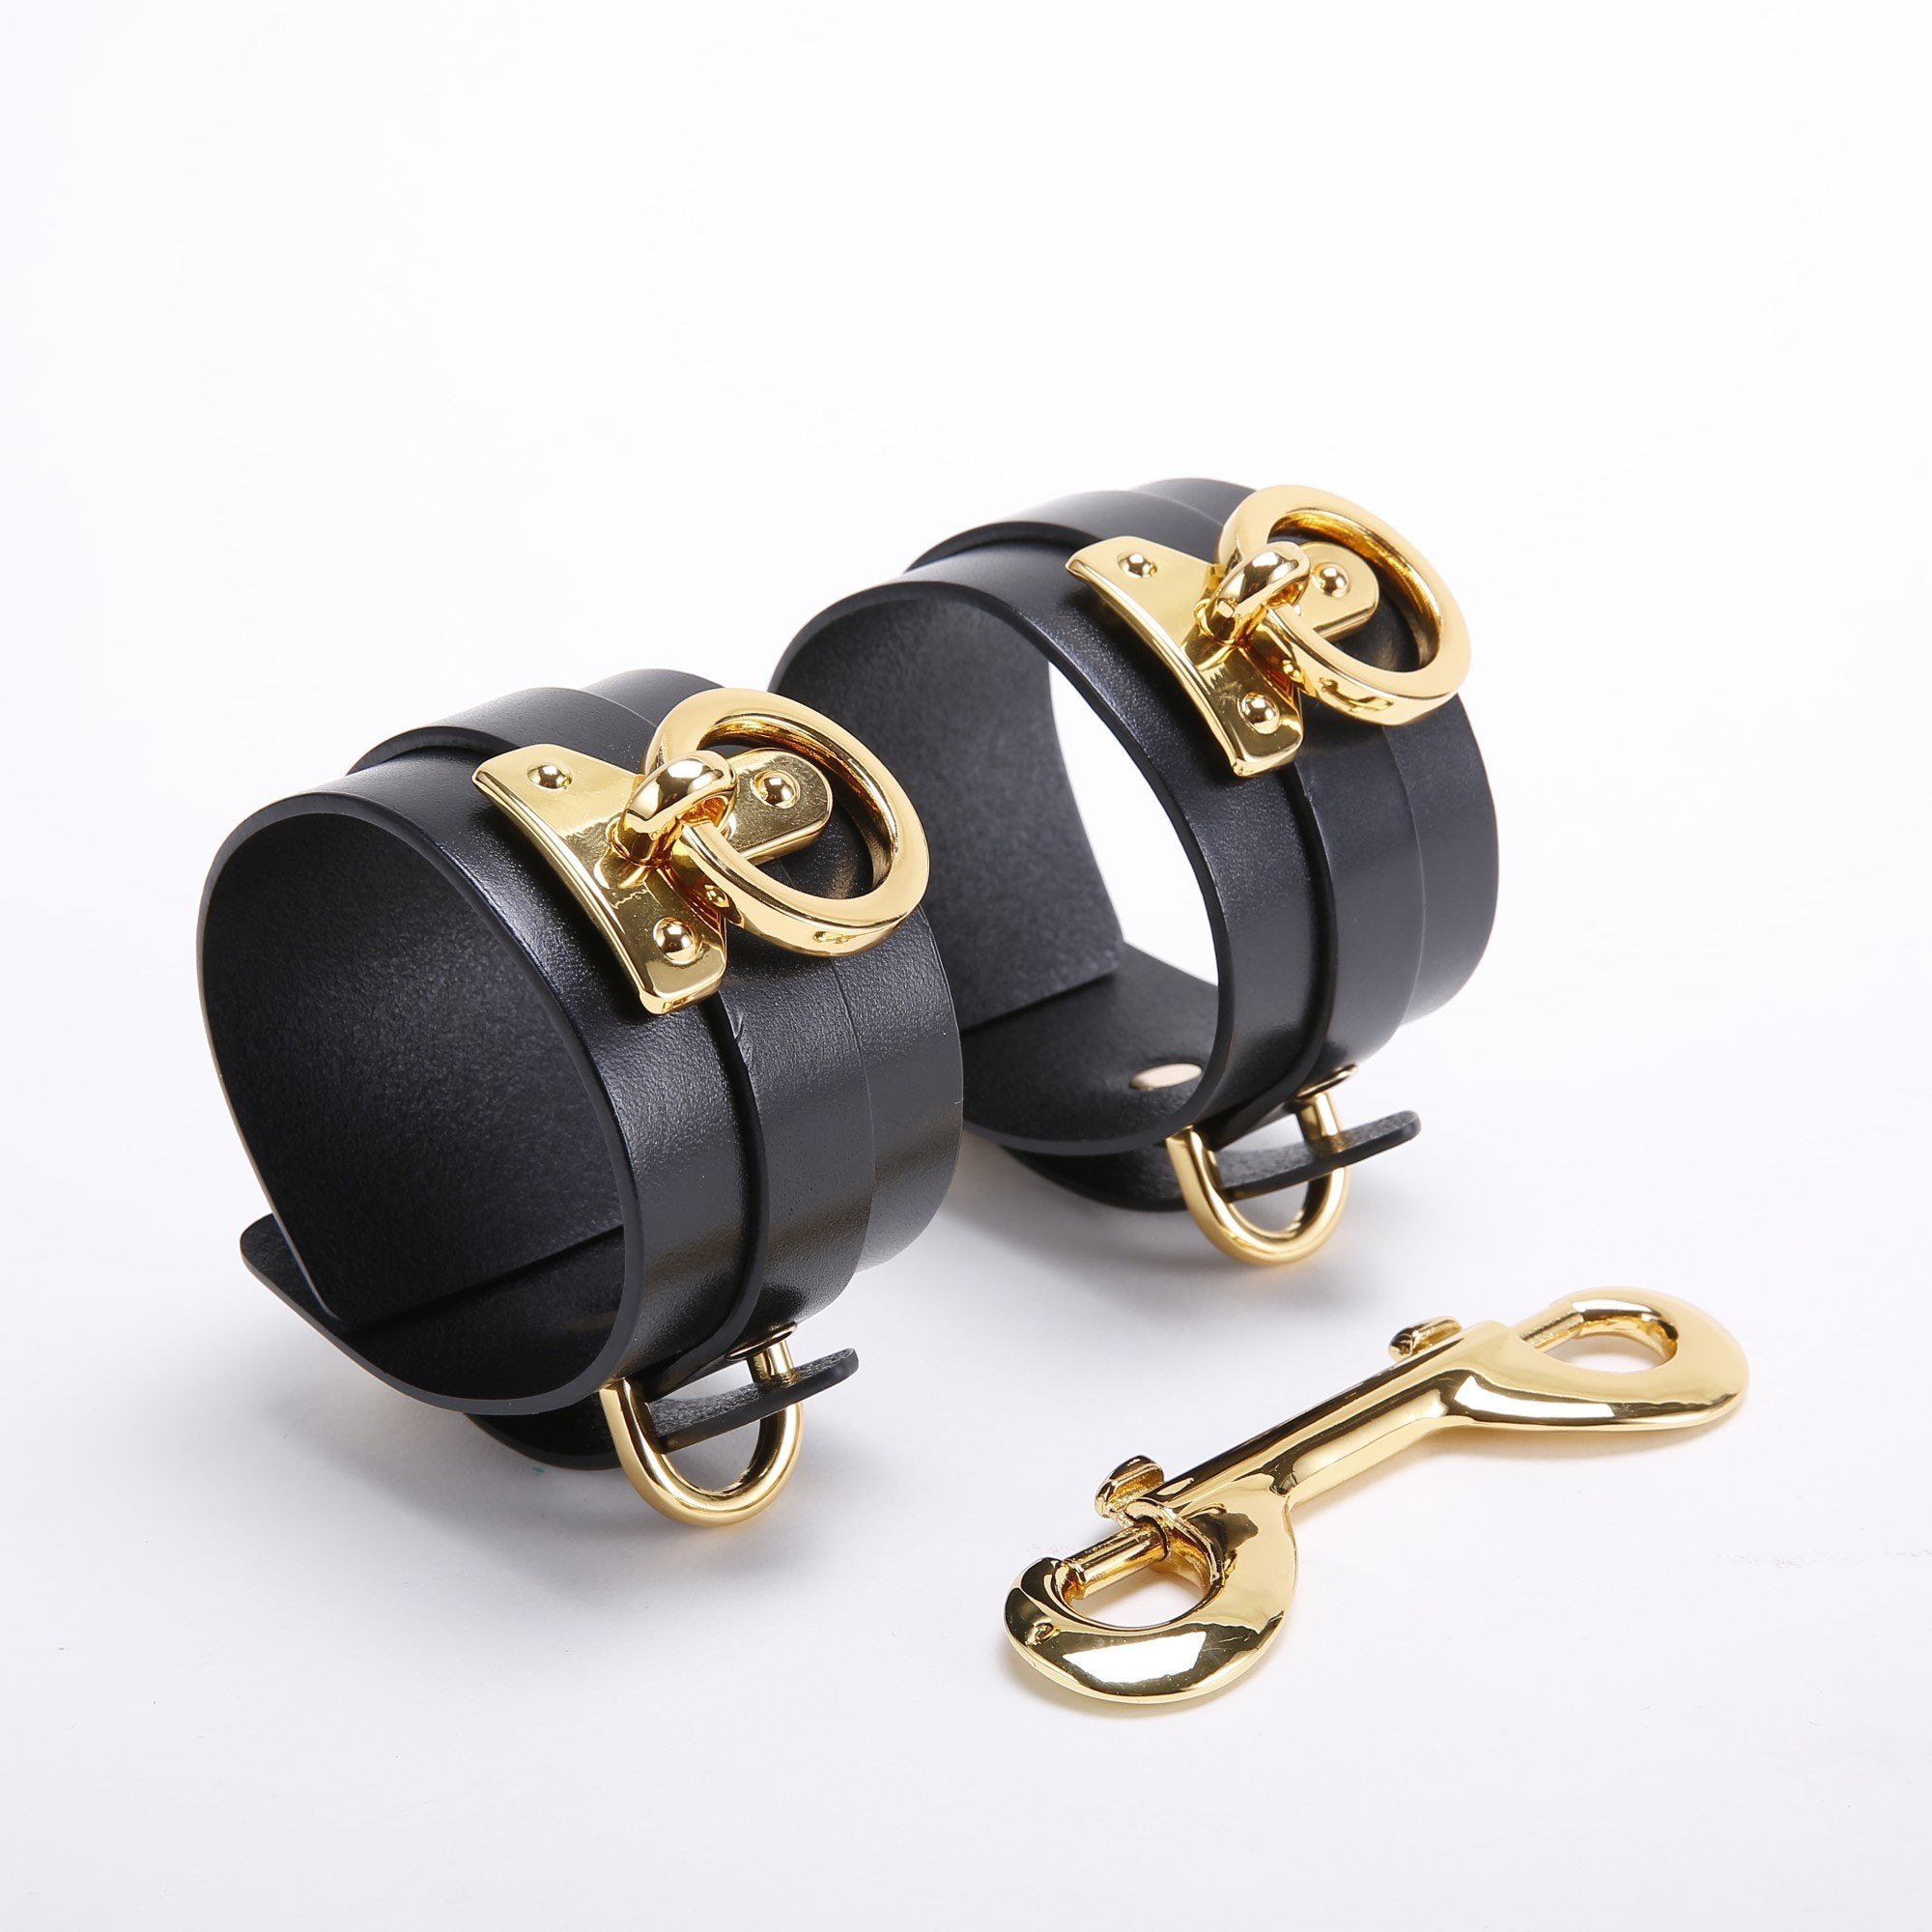 UPKO Luxury Italian Leather Bondage Tools Set with Case - Black